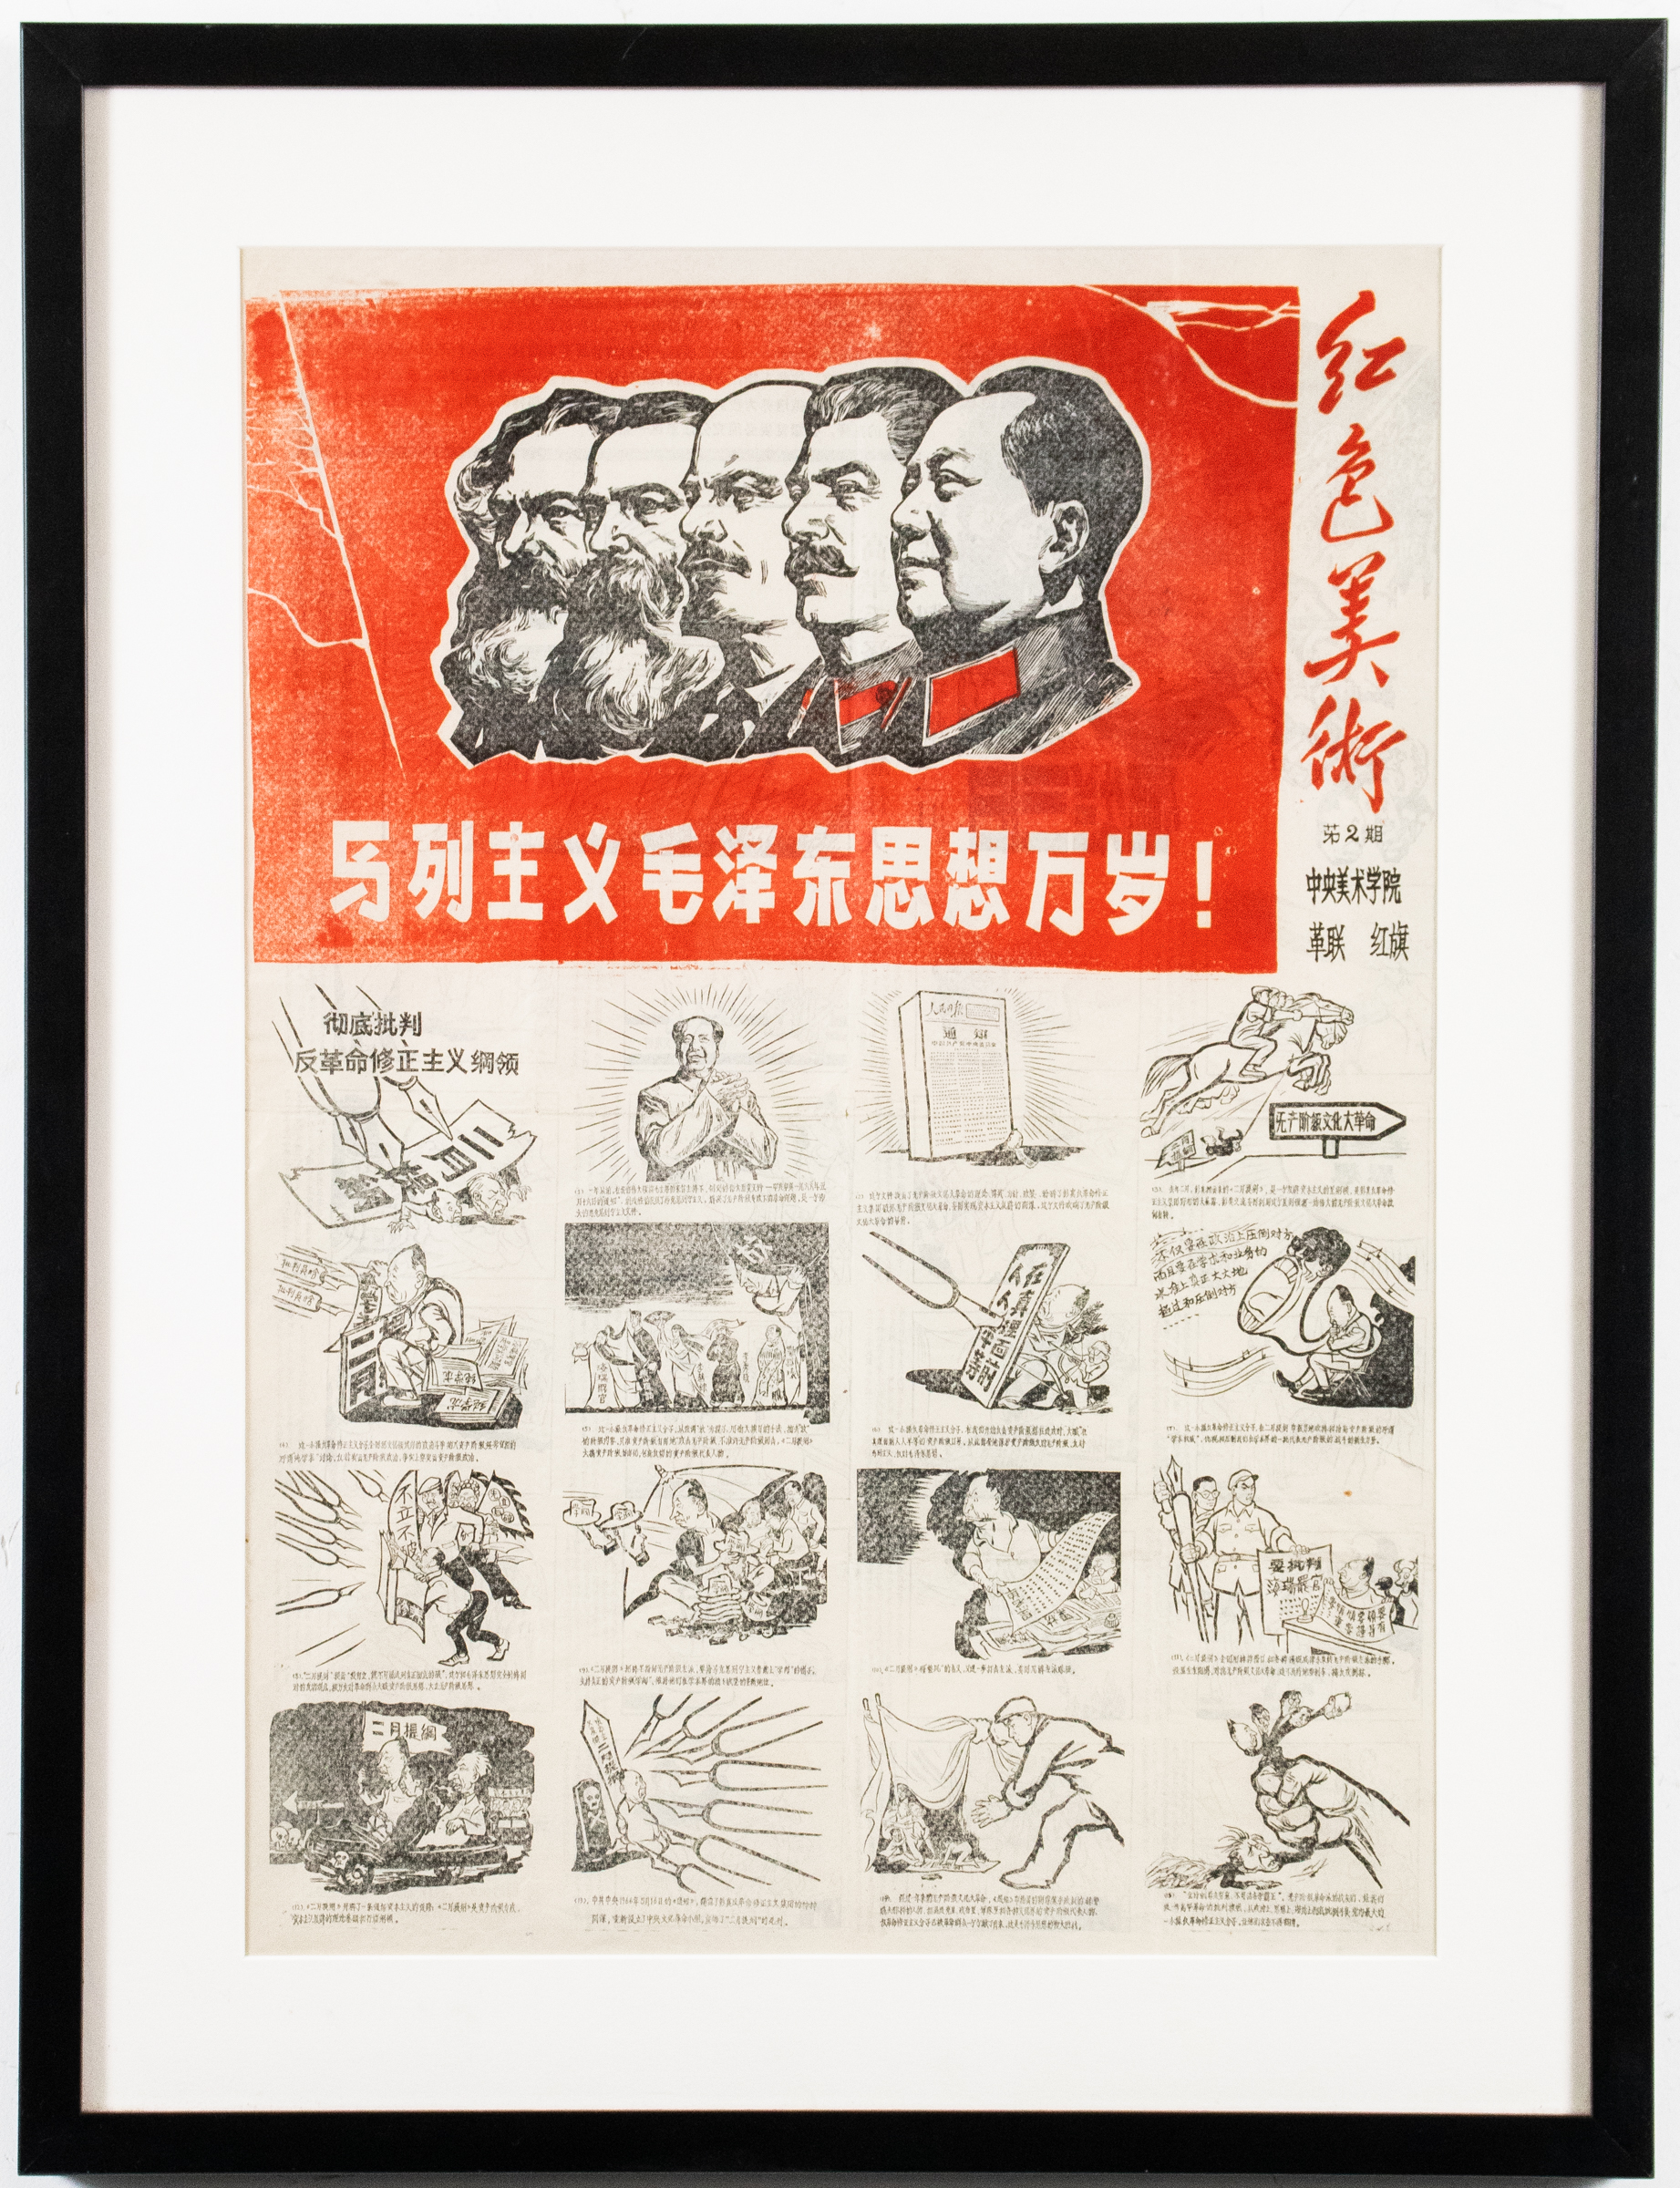 CHINESE COMMUNIST PROPAGANDA NEWSPAPER 3c3a1e